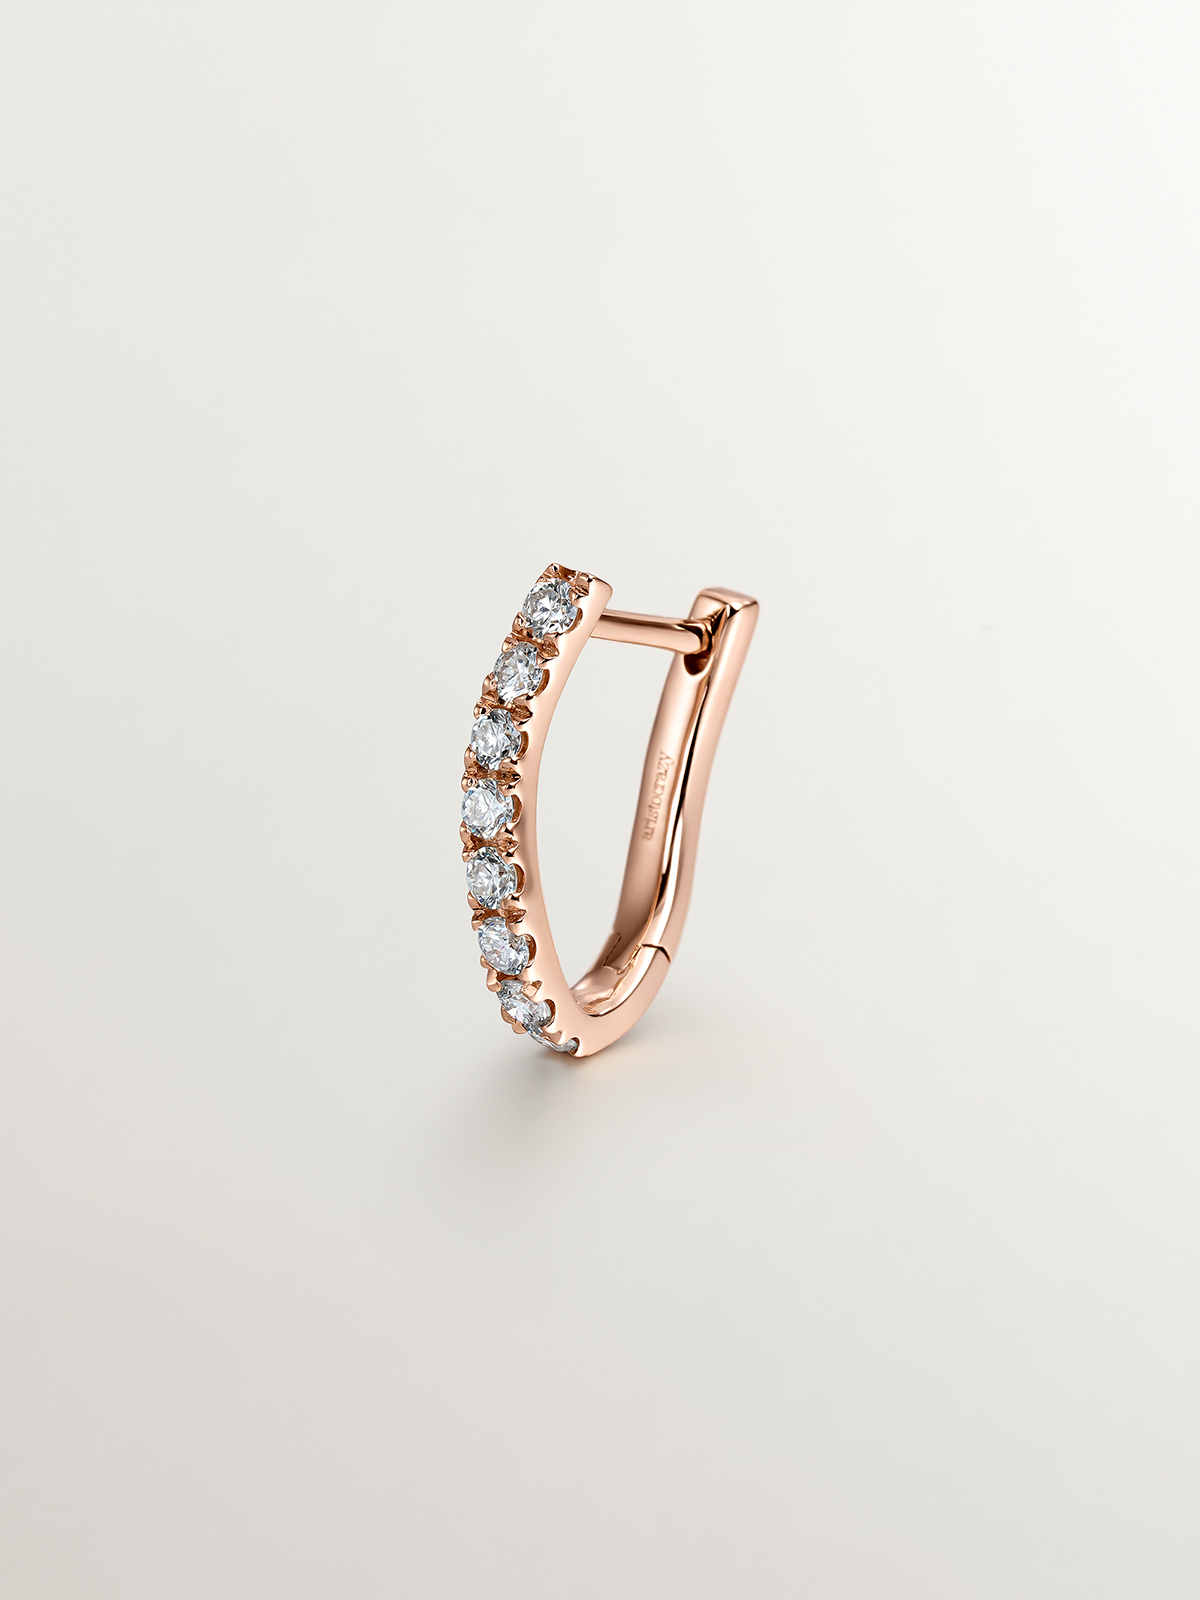 Pendiente individual aro de oro rosa de 18K con diamantes y forma ondulada